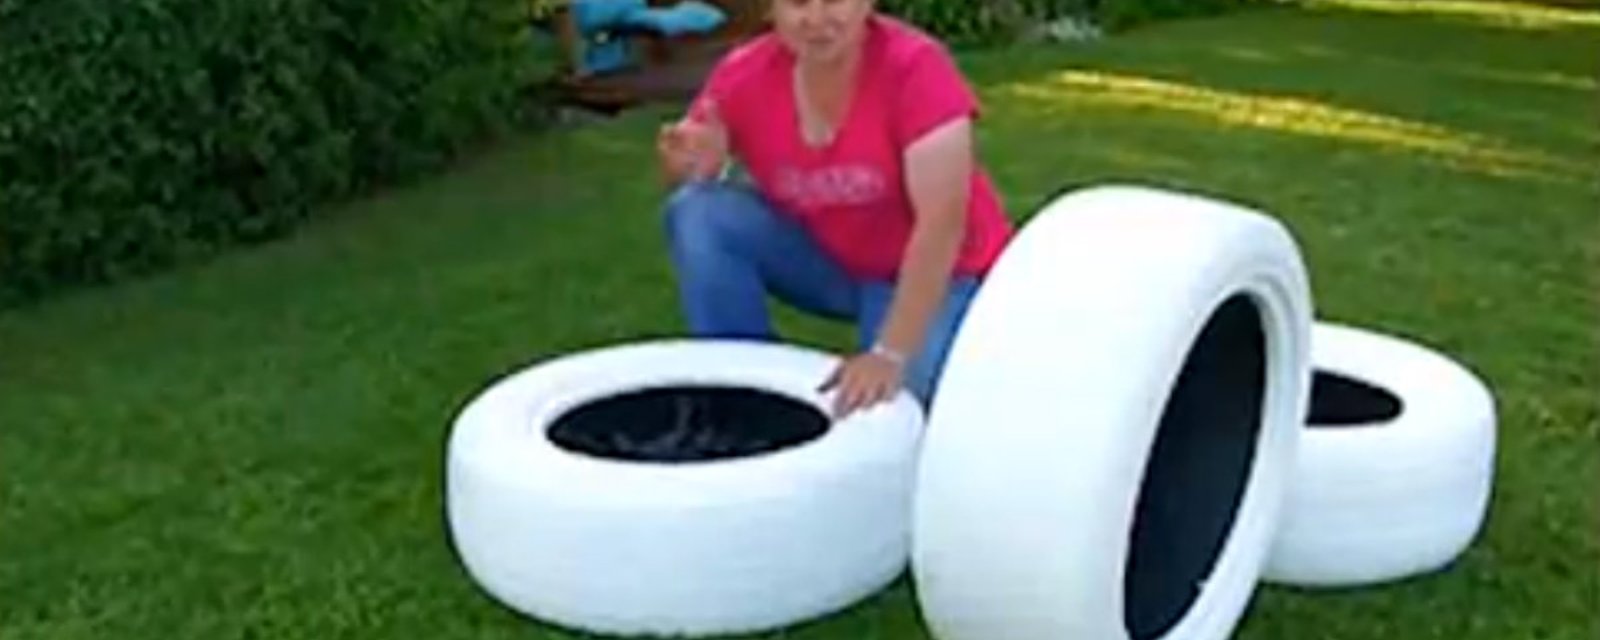 Elle peinture 3 pneus et les empile dans sa cour: quand elle ajoute la touche finale, on comprend enfin!